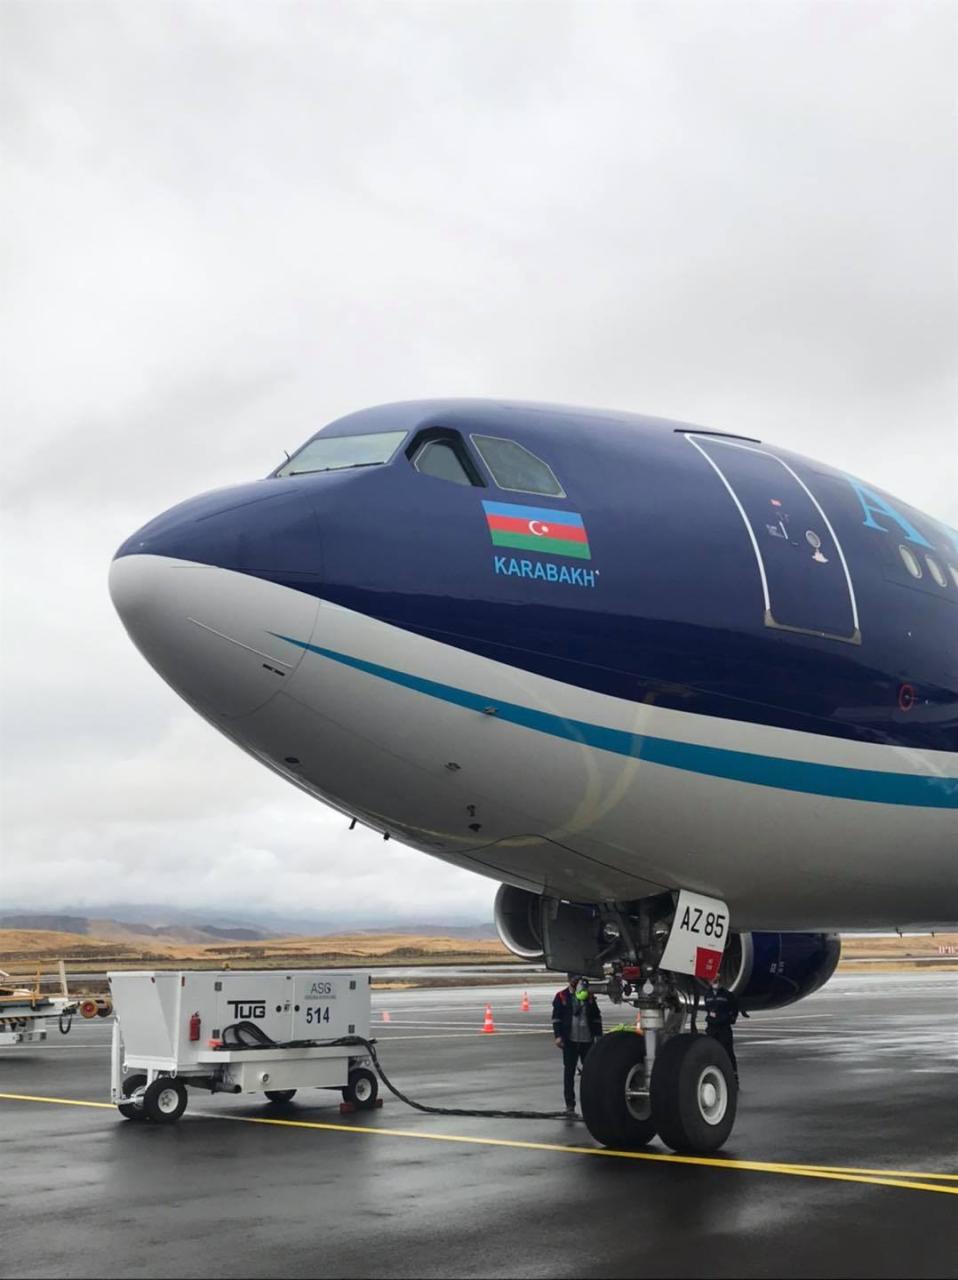 Azerbaijan Airlines' Karabakh aircraft lands at Fuzuli Airport - Gallery Image